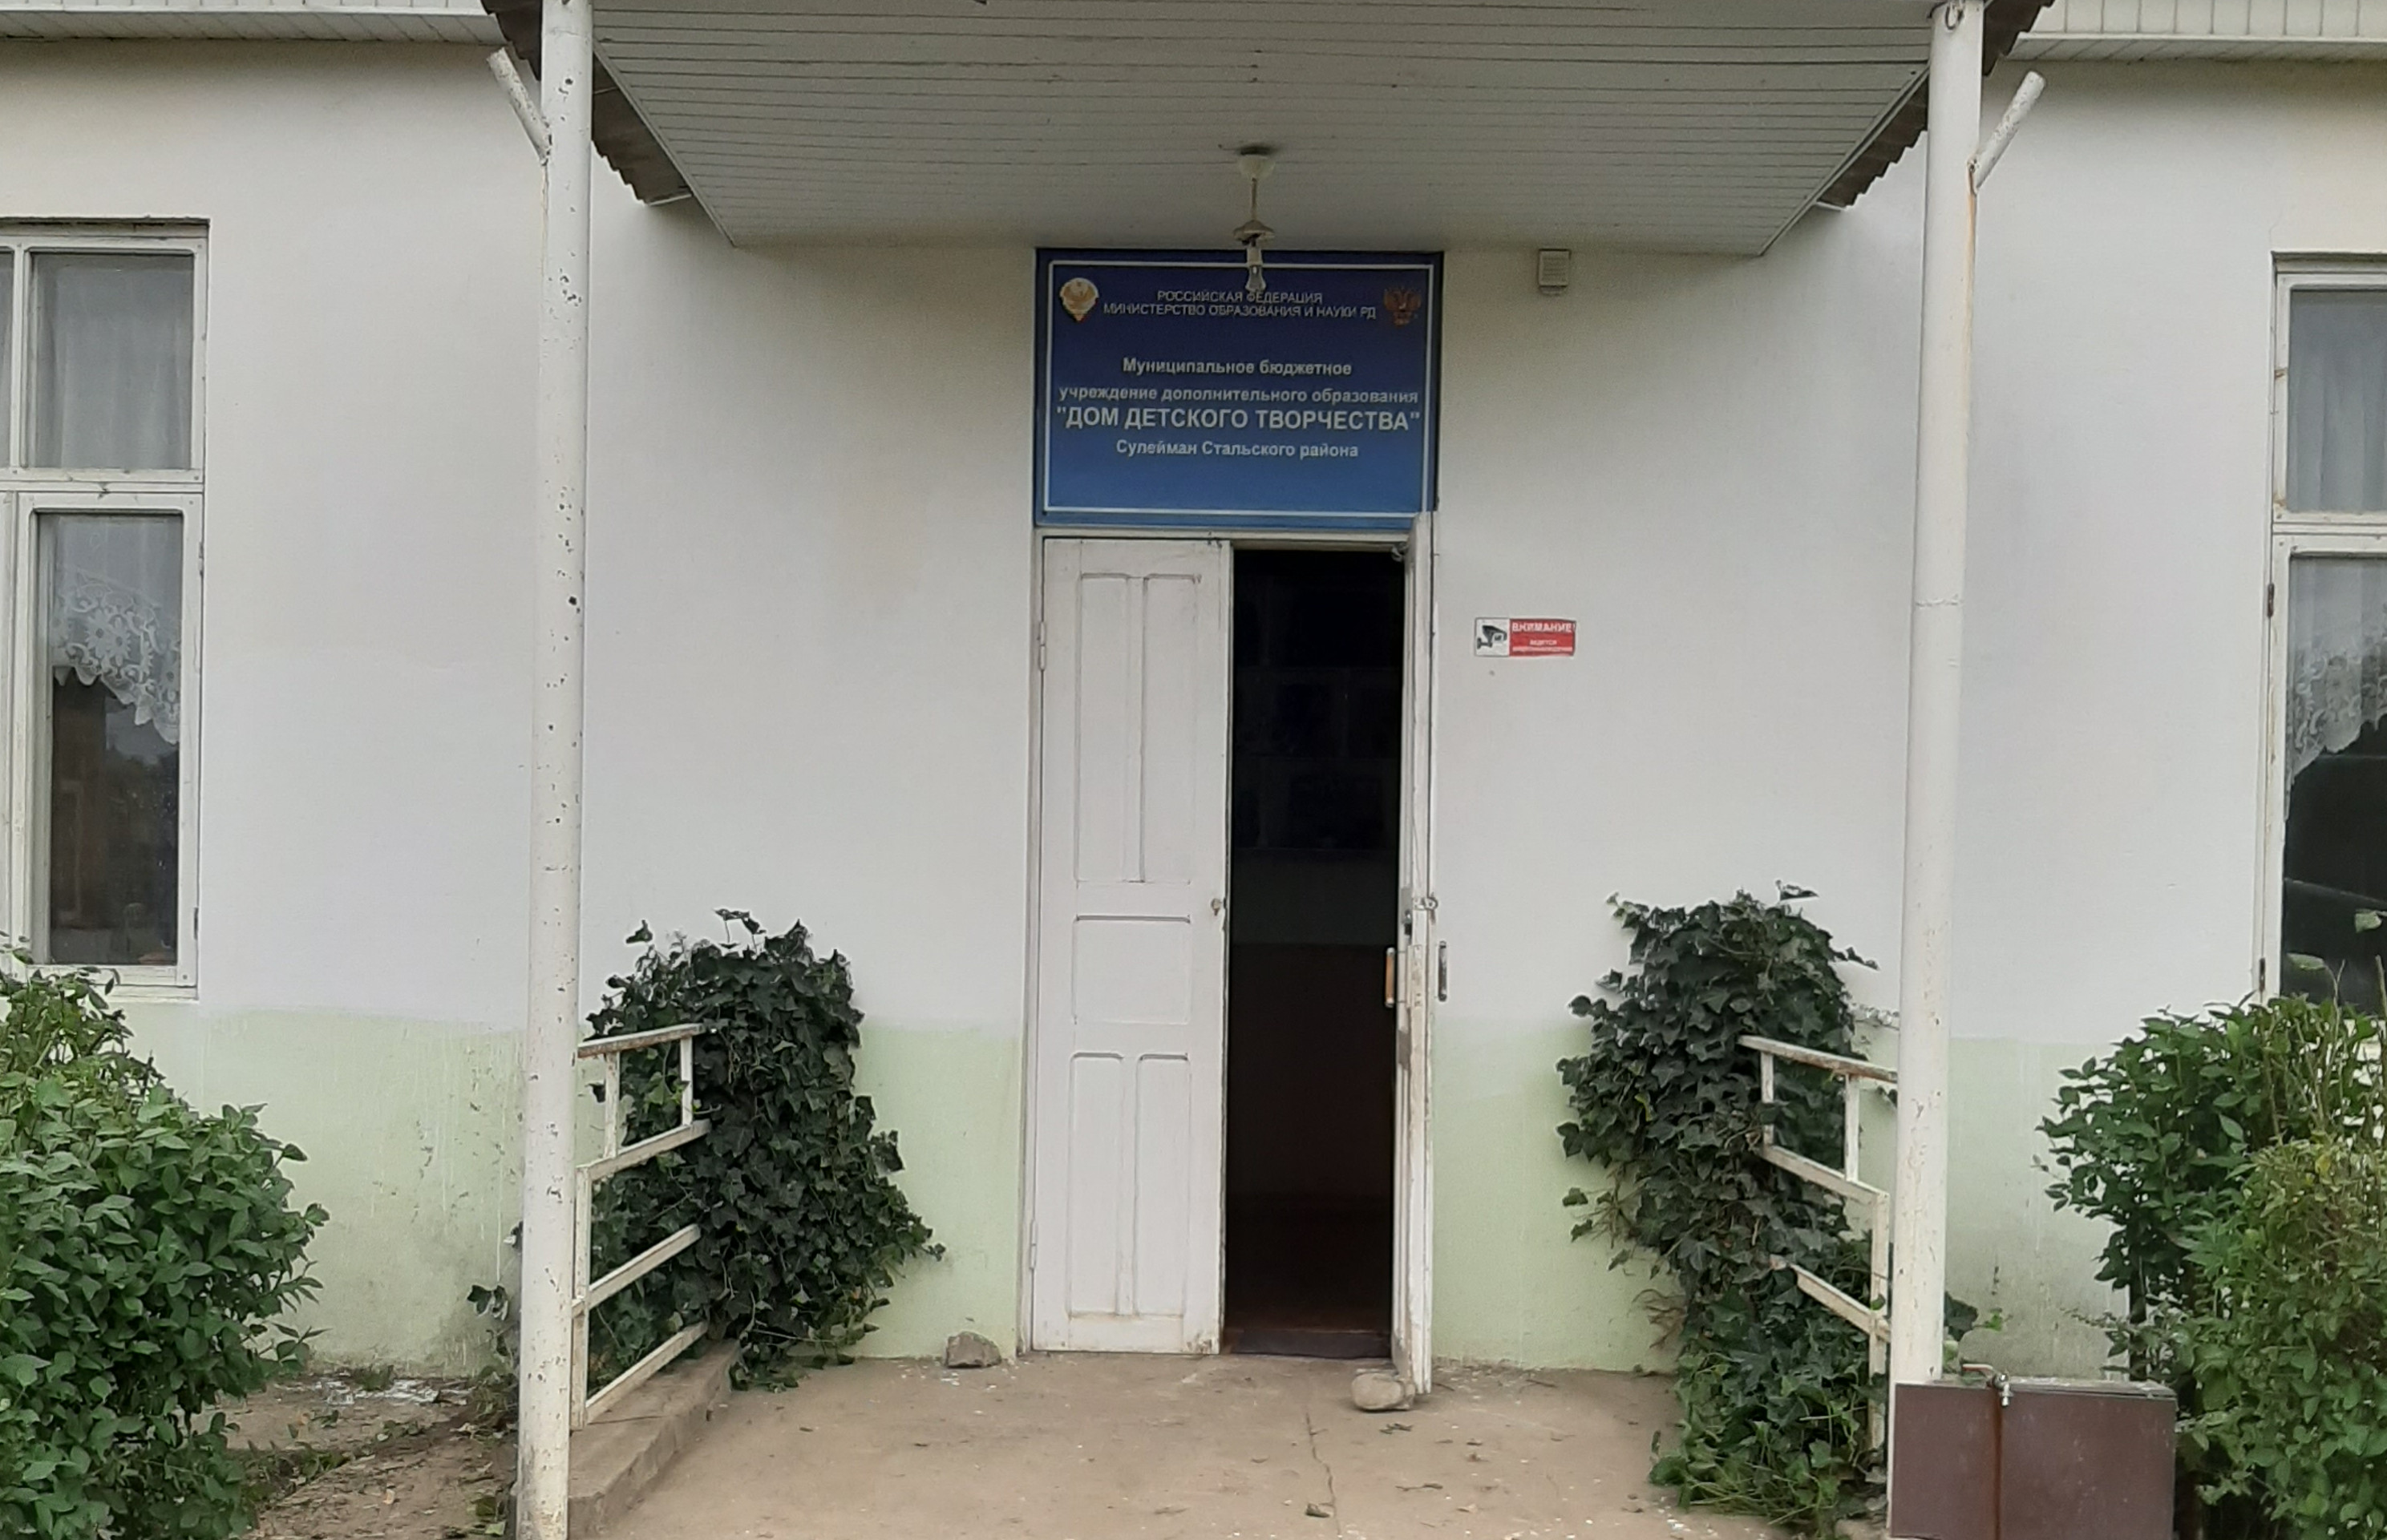 Муниципальное бюджетное учреждение дополнительного образования "Дом детского творчества" Сулейман-Стальского района